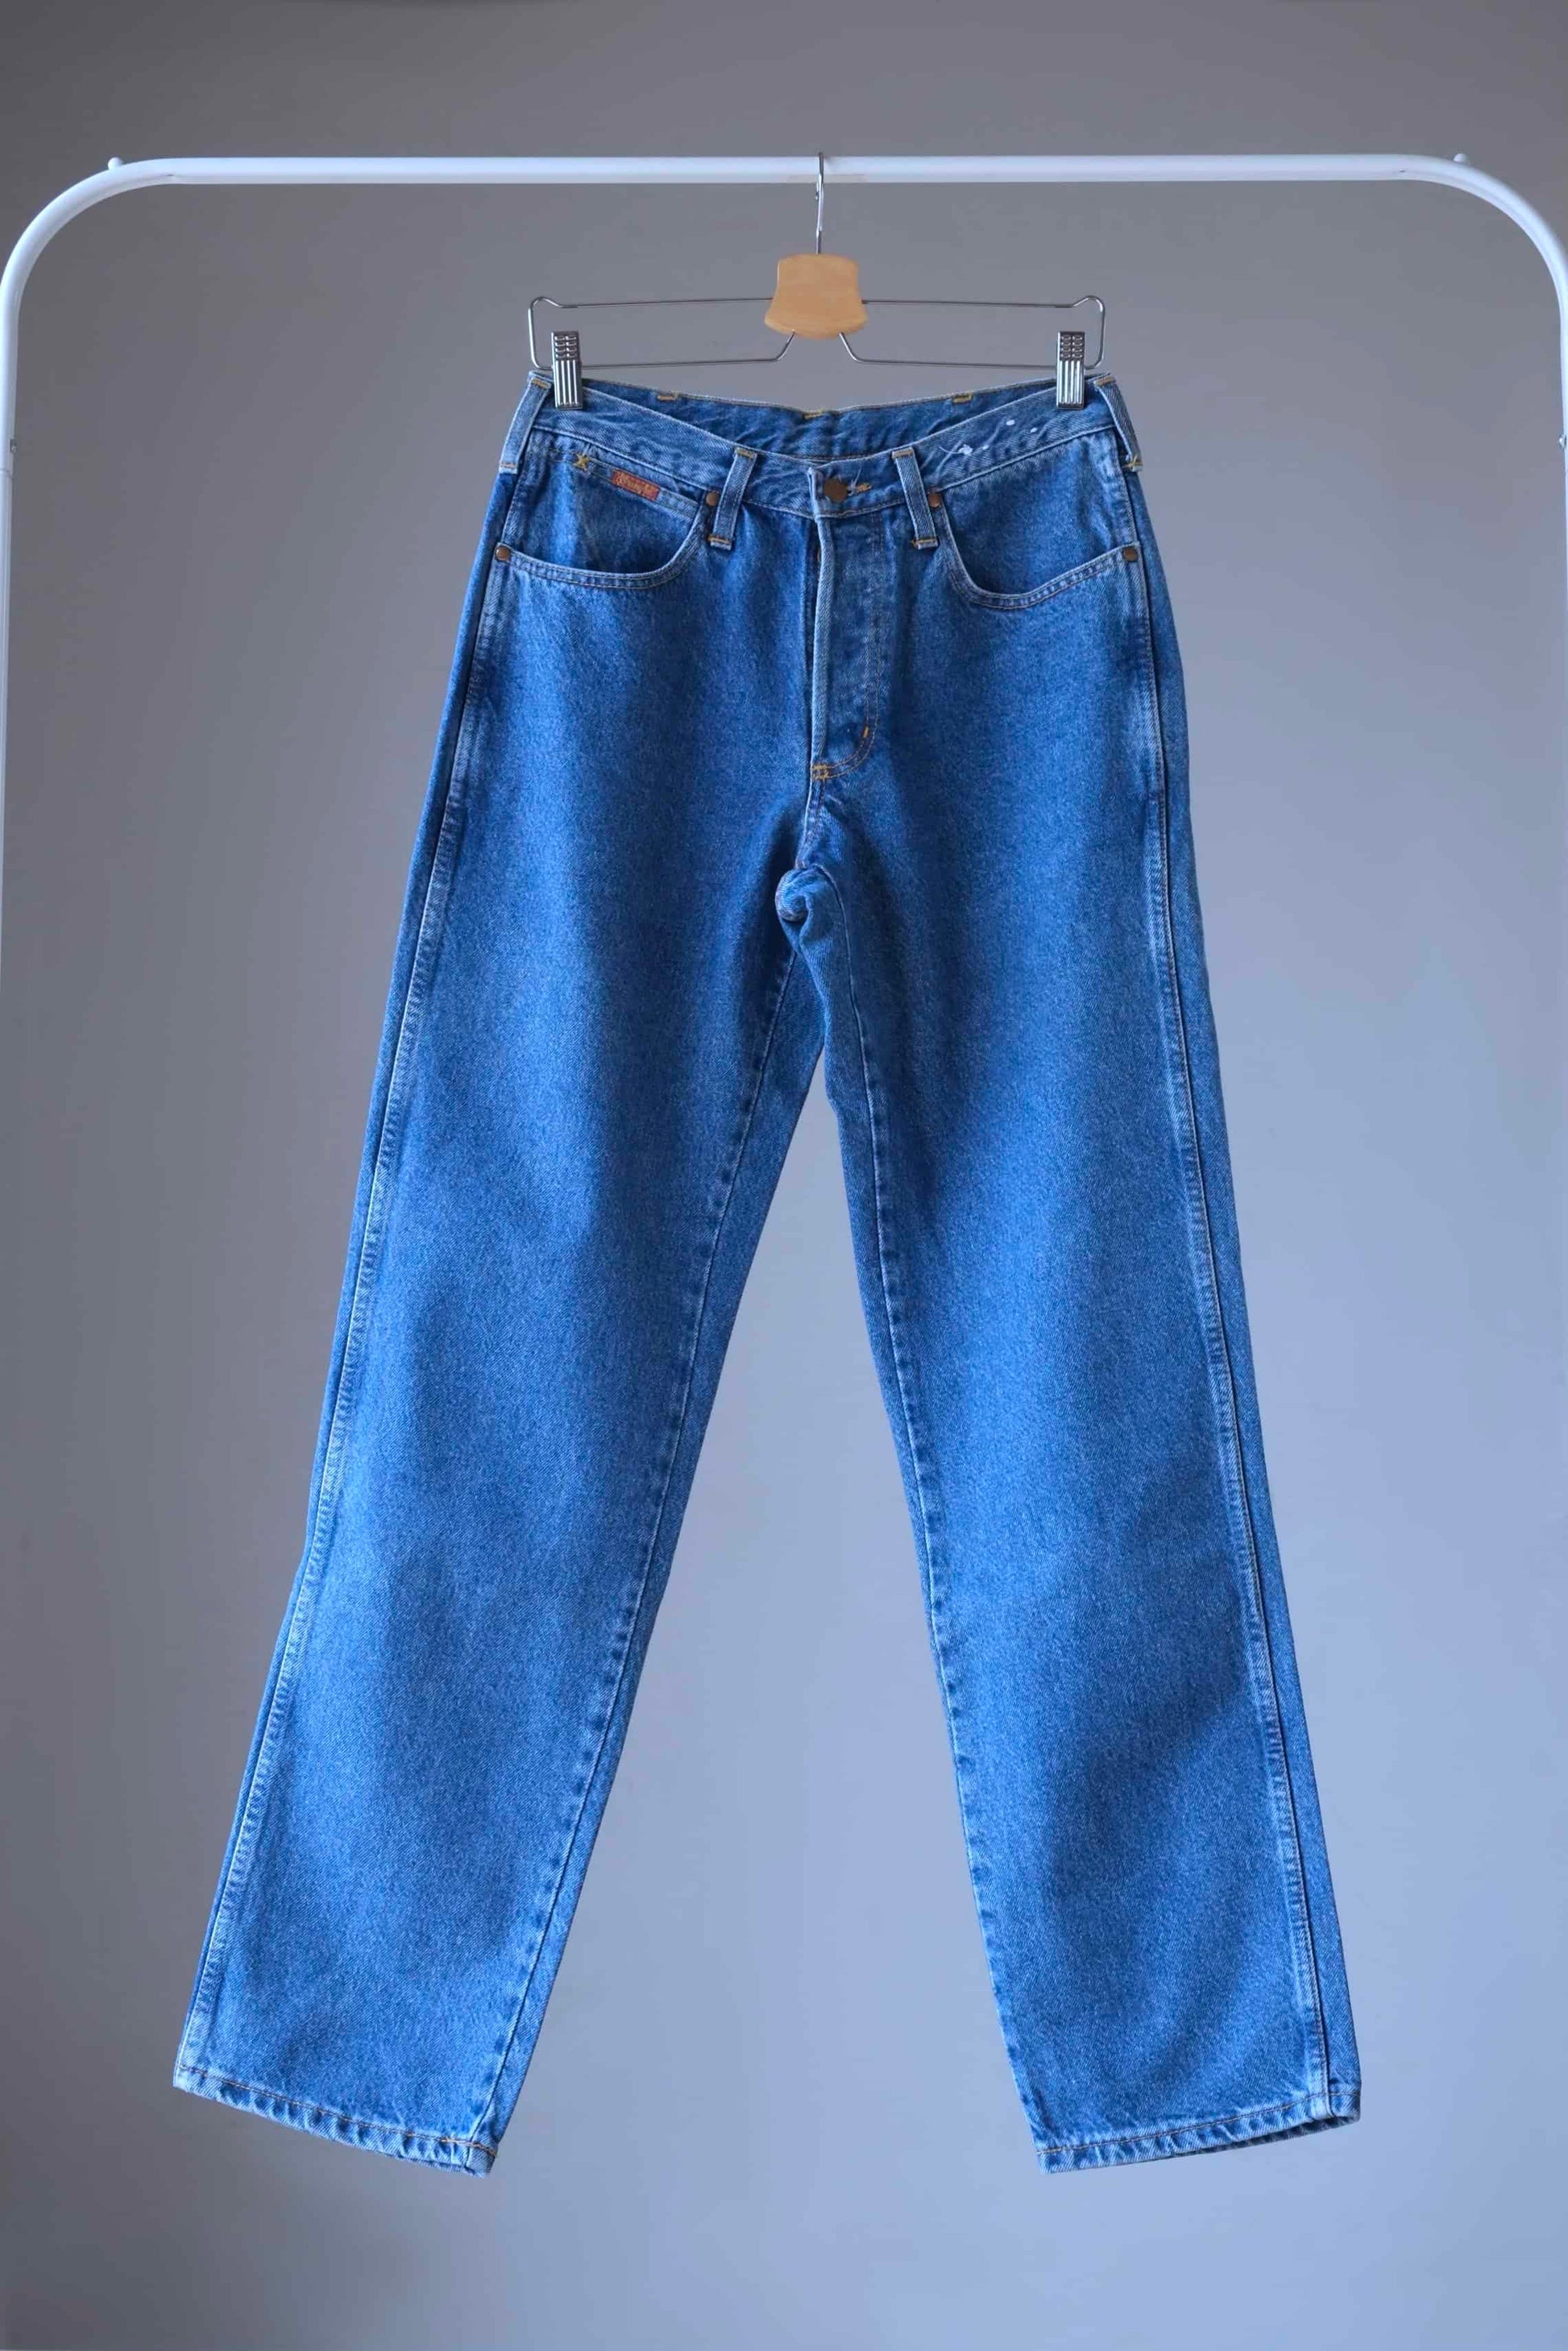 WRANGLER Vintage 90's Jeans Blue Wash on hanger